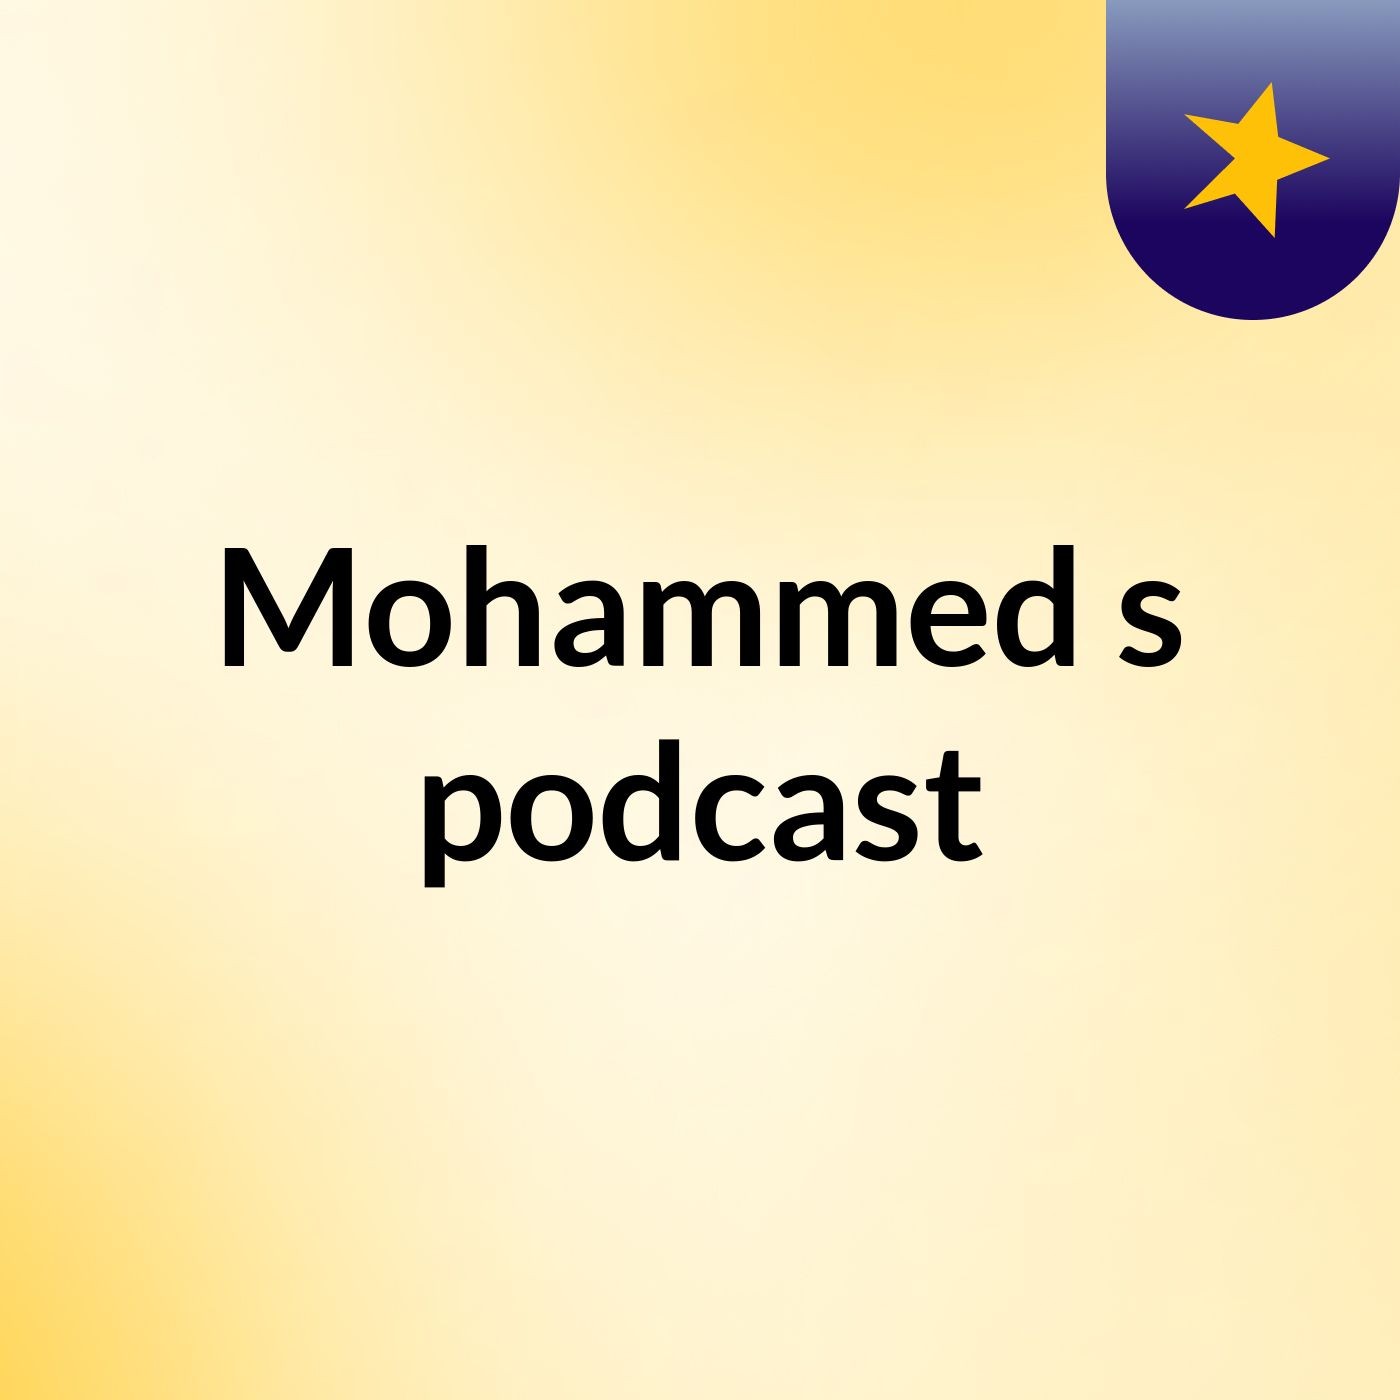 Mohammed's podcast